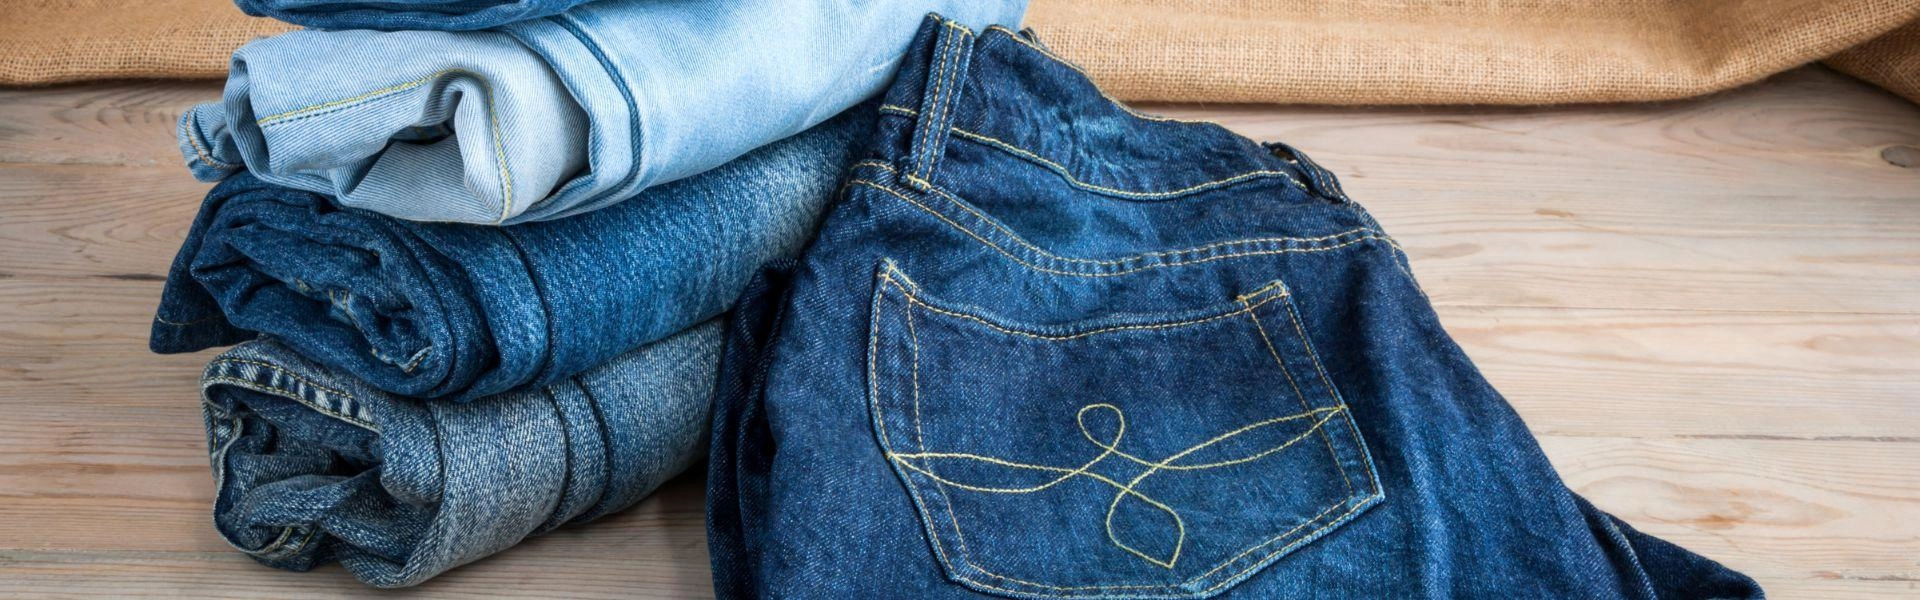 Calças jeans dobradas em cima de uma superfície plana e lisa.